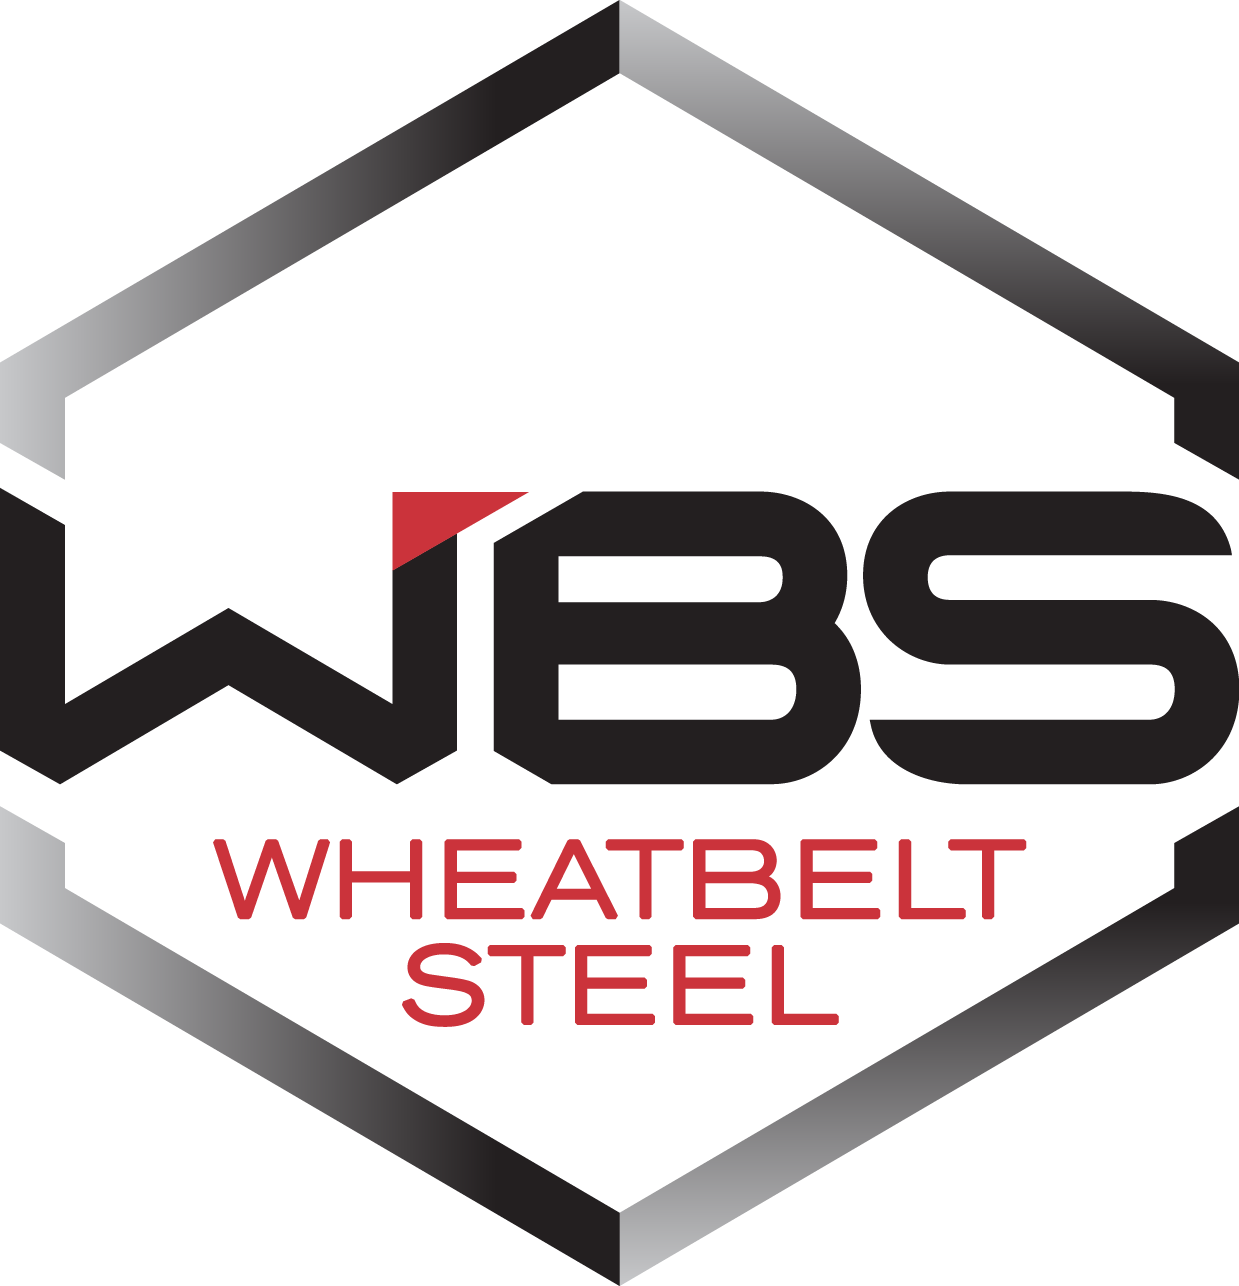 Wheatbelt Steel